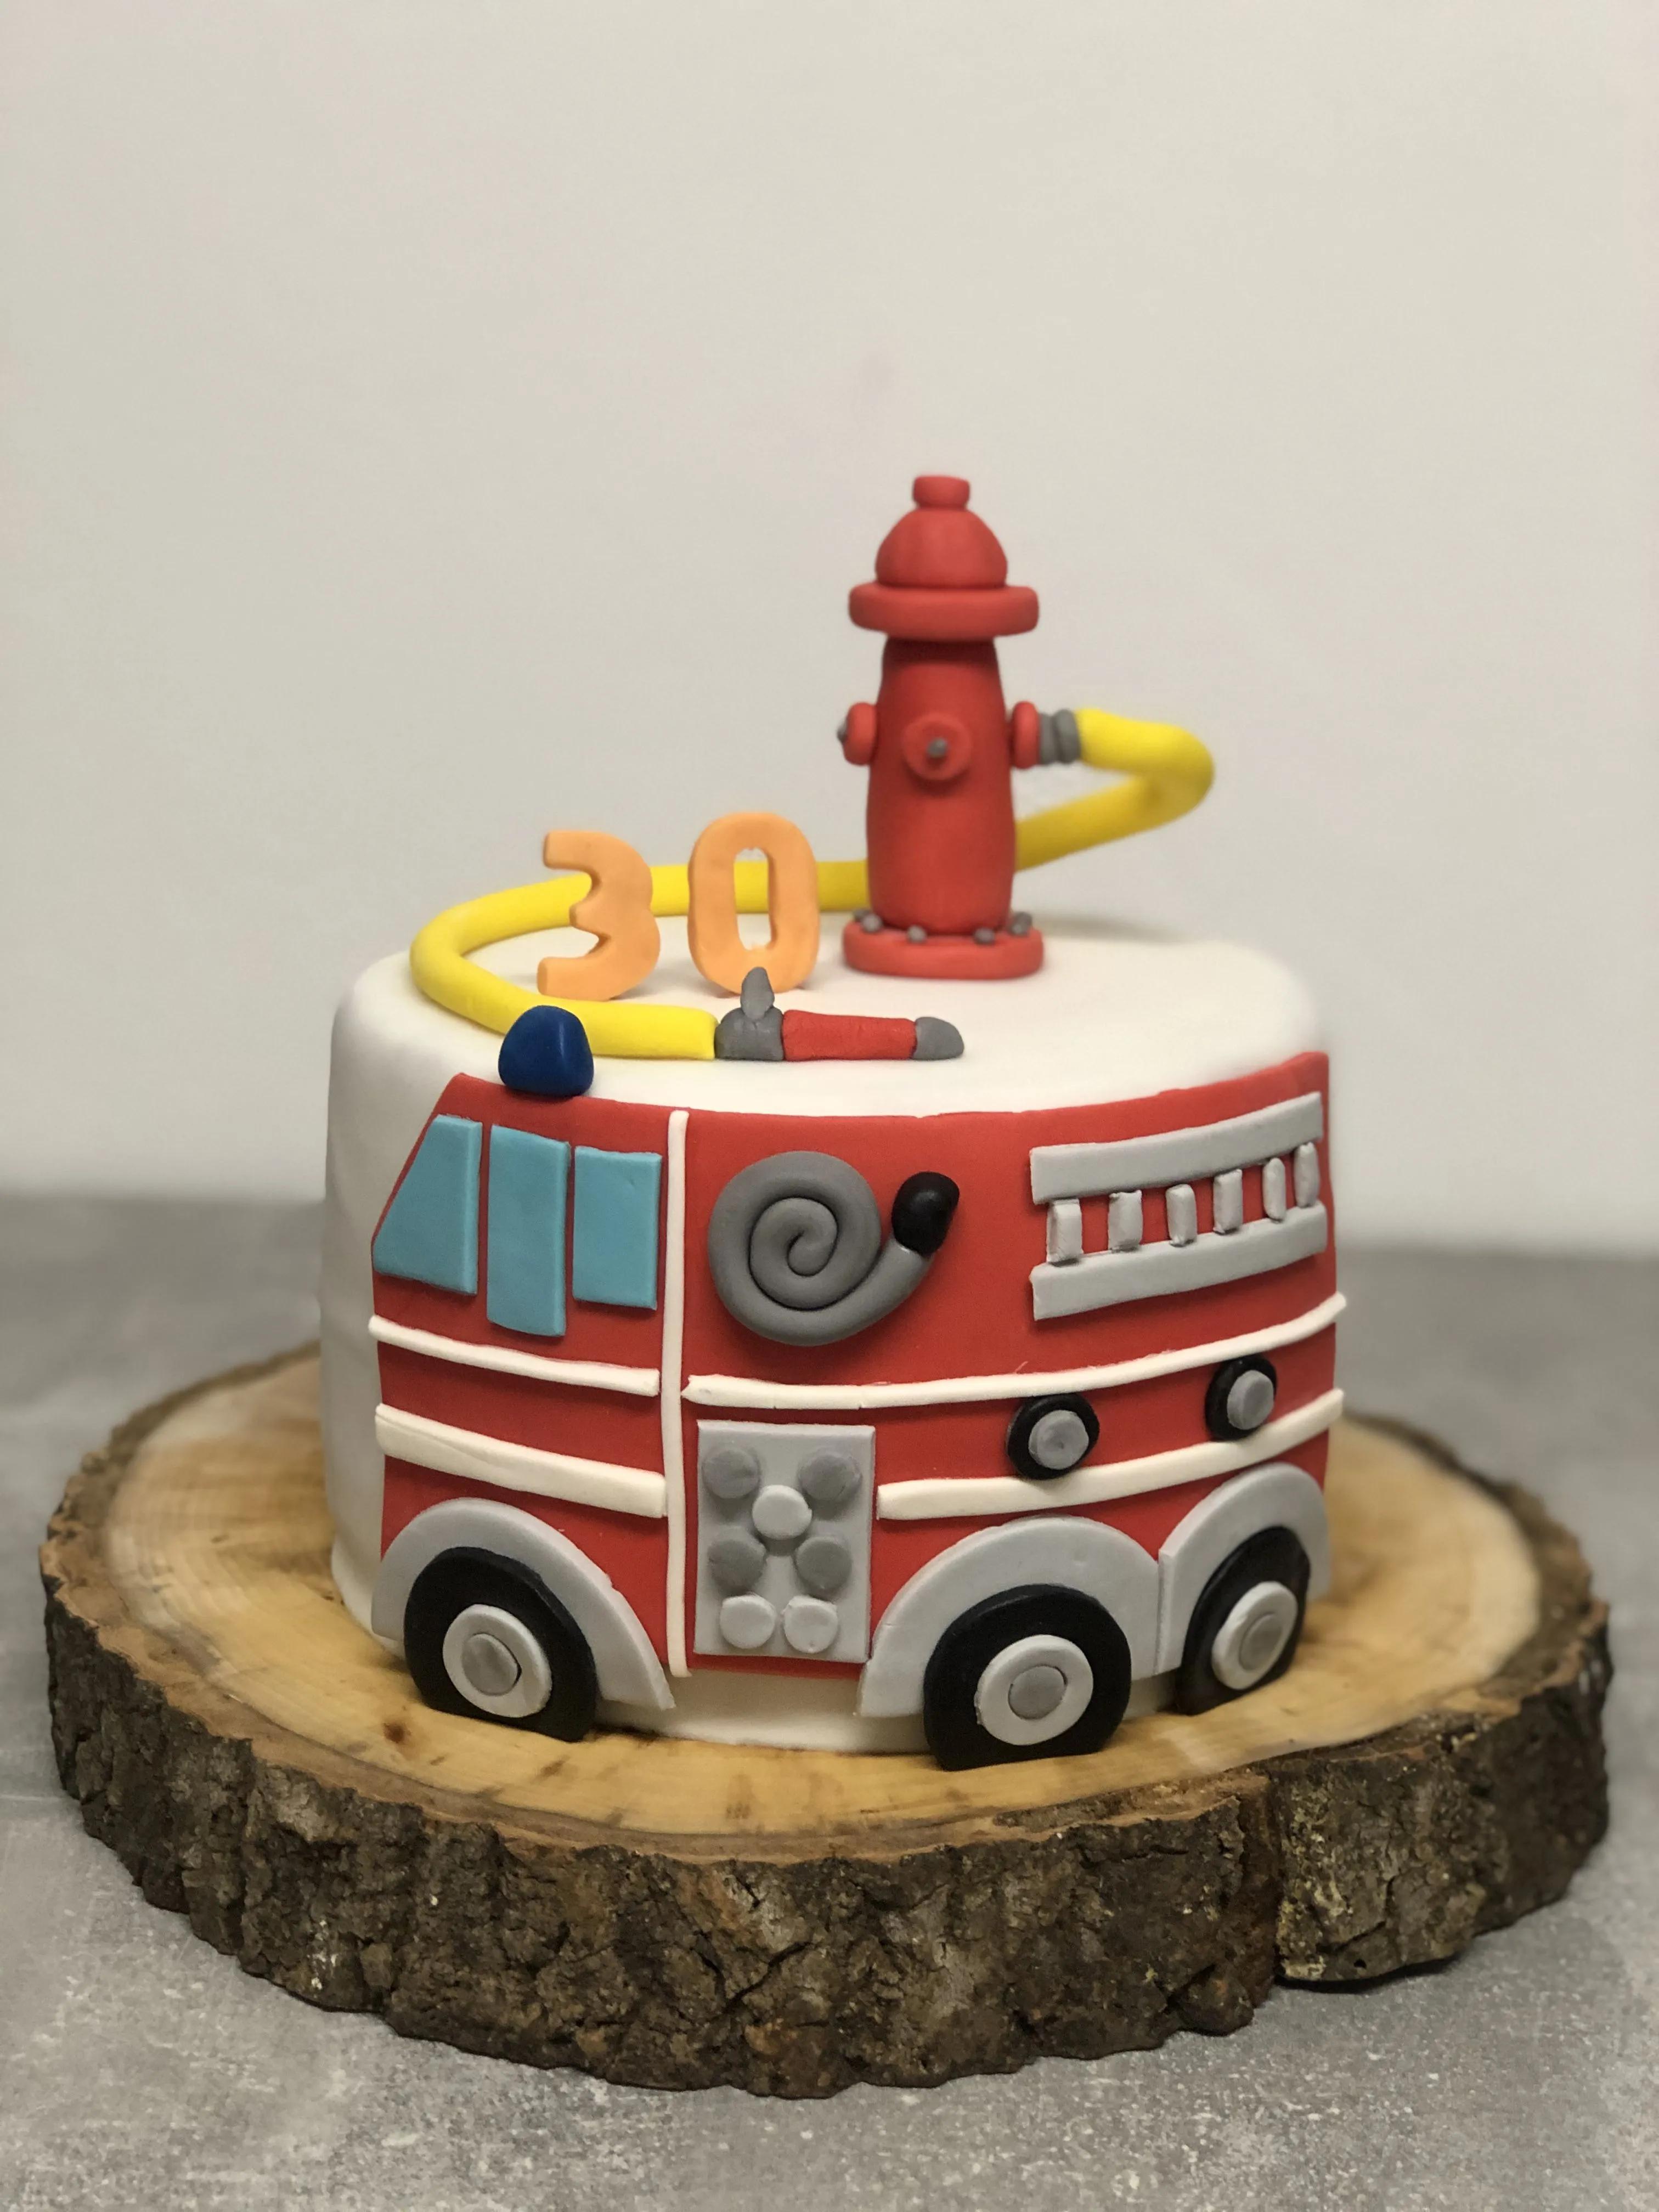 Feuerwehrtorte zum 30. :: Tamiistorten | Feuerwehr torte, Feuerwehrauto ...